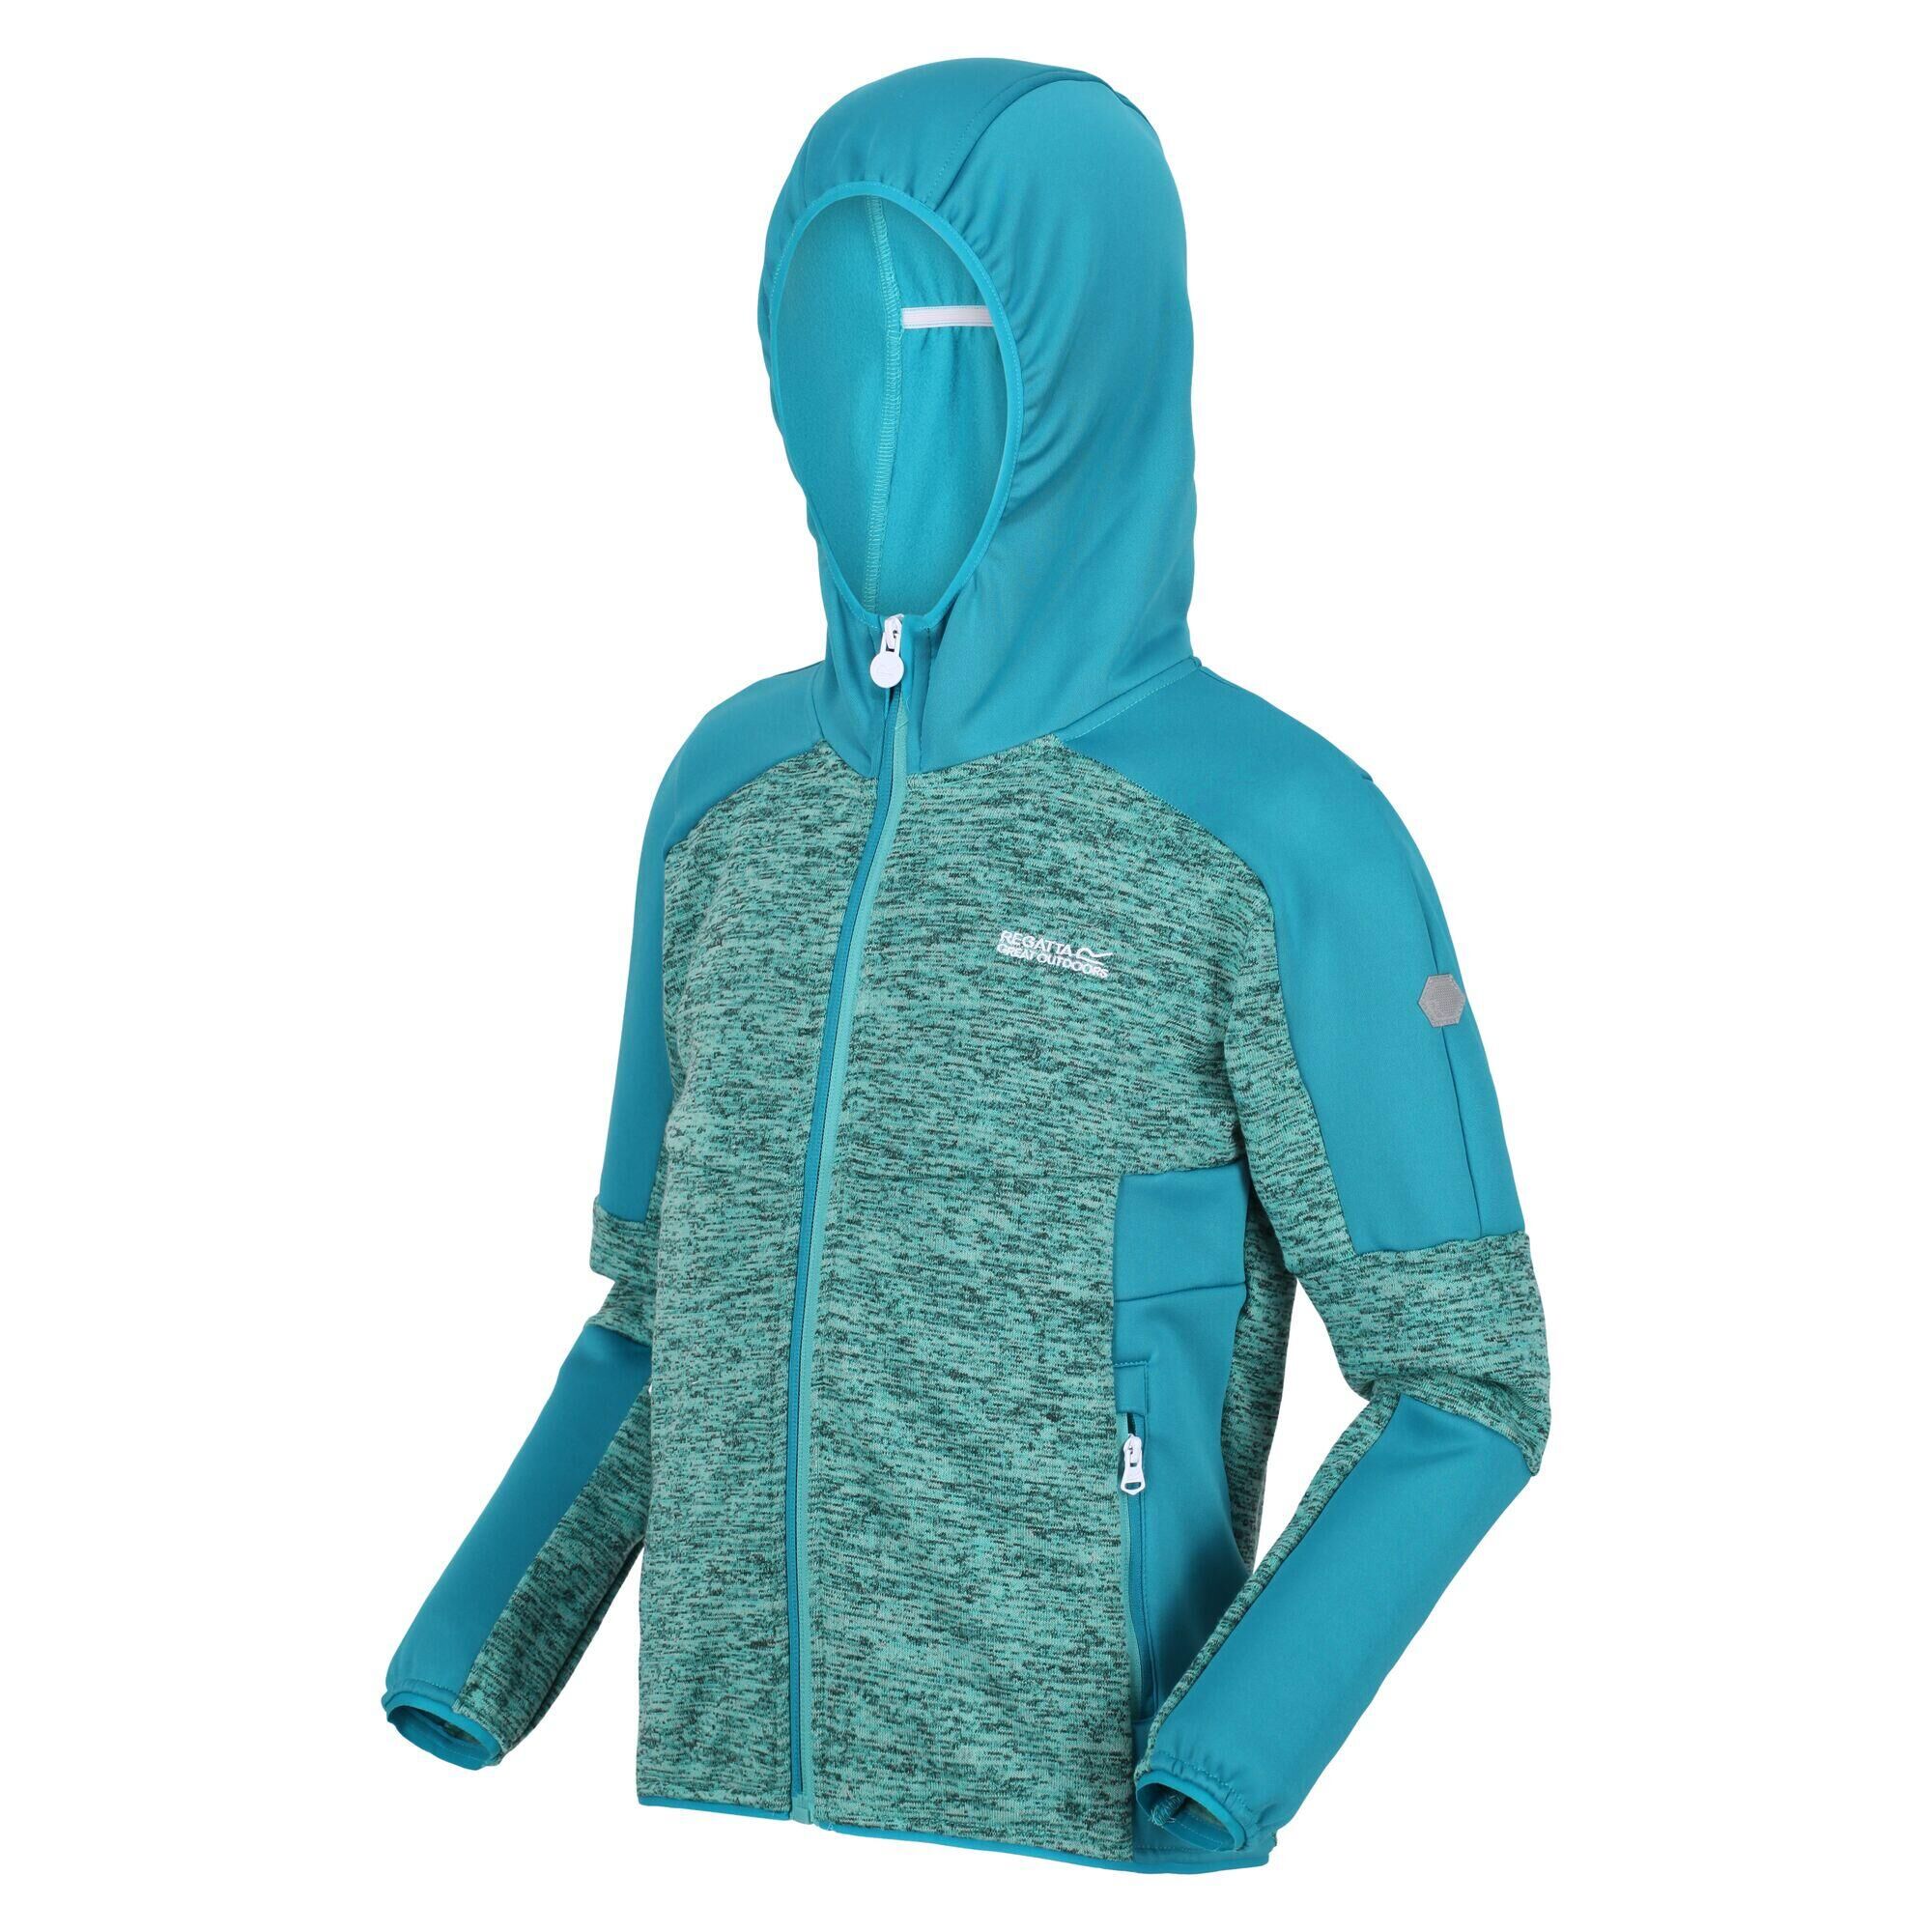 REGATTA Dissolver V Walking Kids Full Zip Fleece - Turquoise Blue